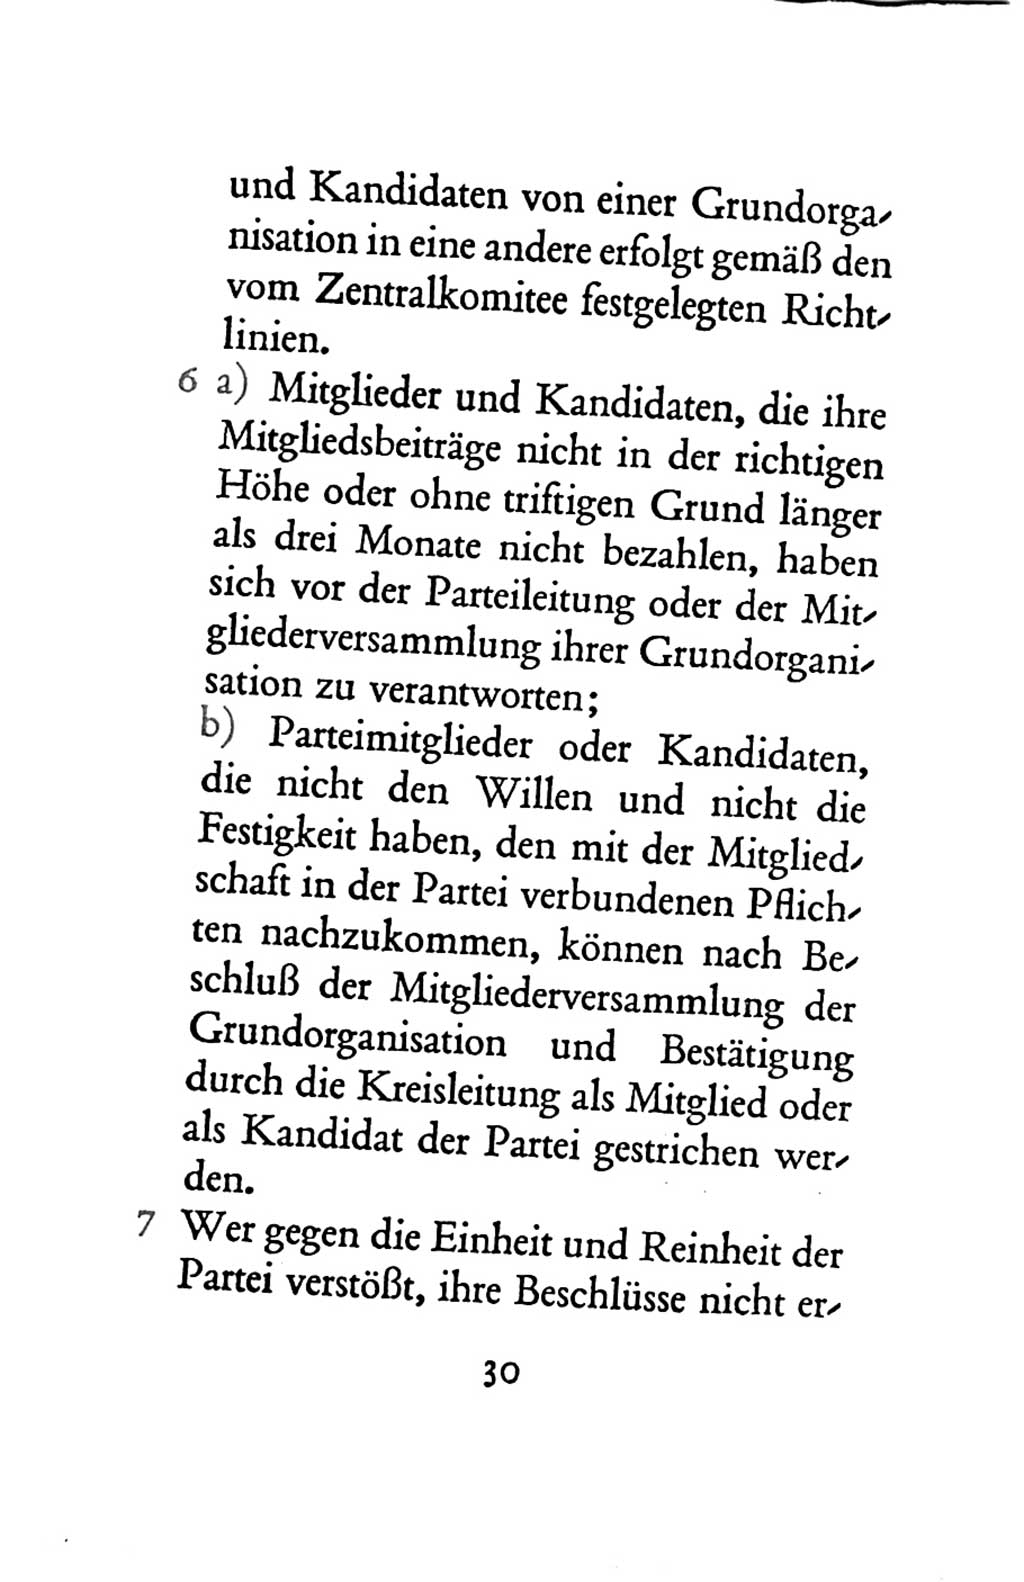 Statut der Sozialistischen Einheitspartei Deutschlands (SED) 1963, Seite 30 (St. SED DDR 1963, S. 30)